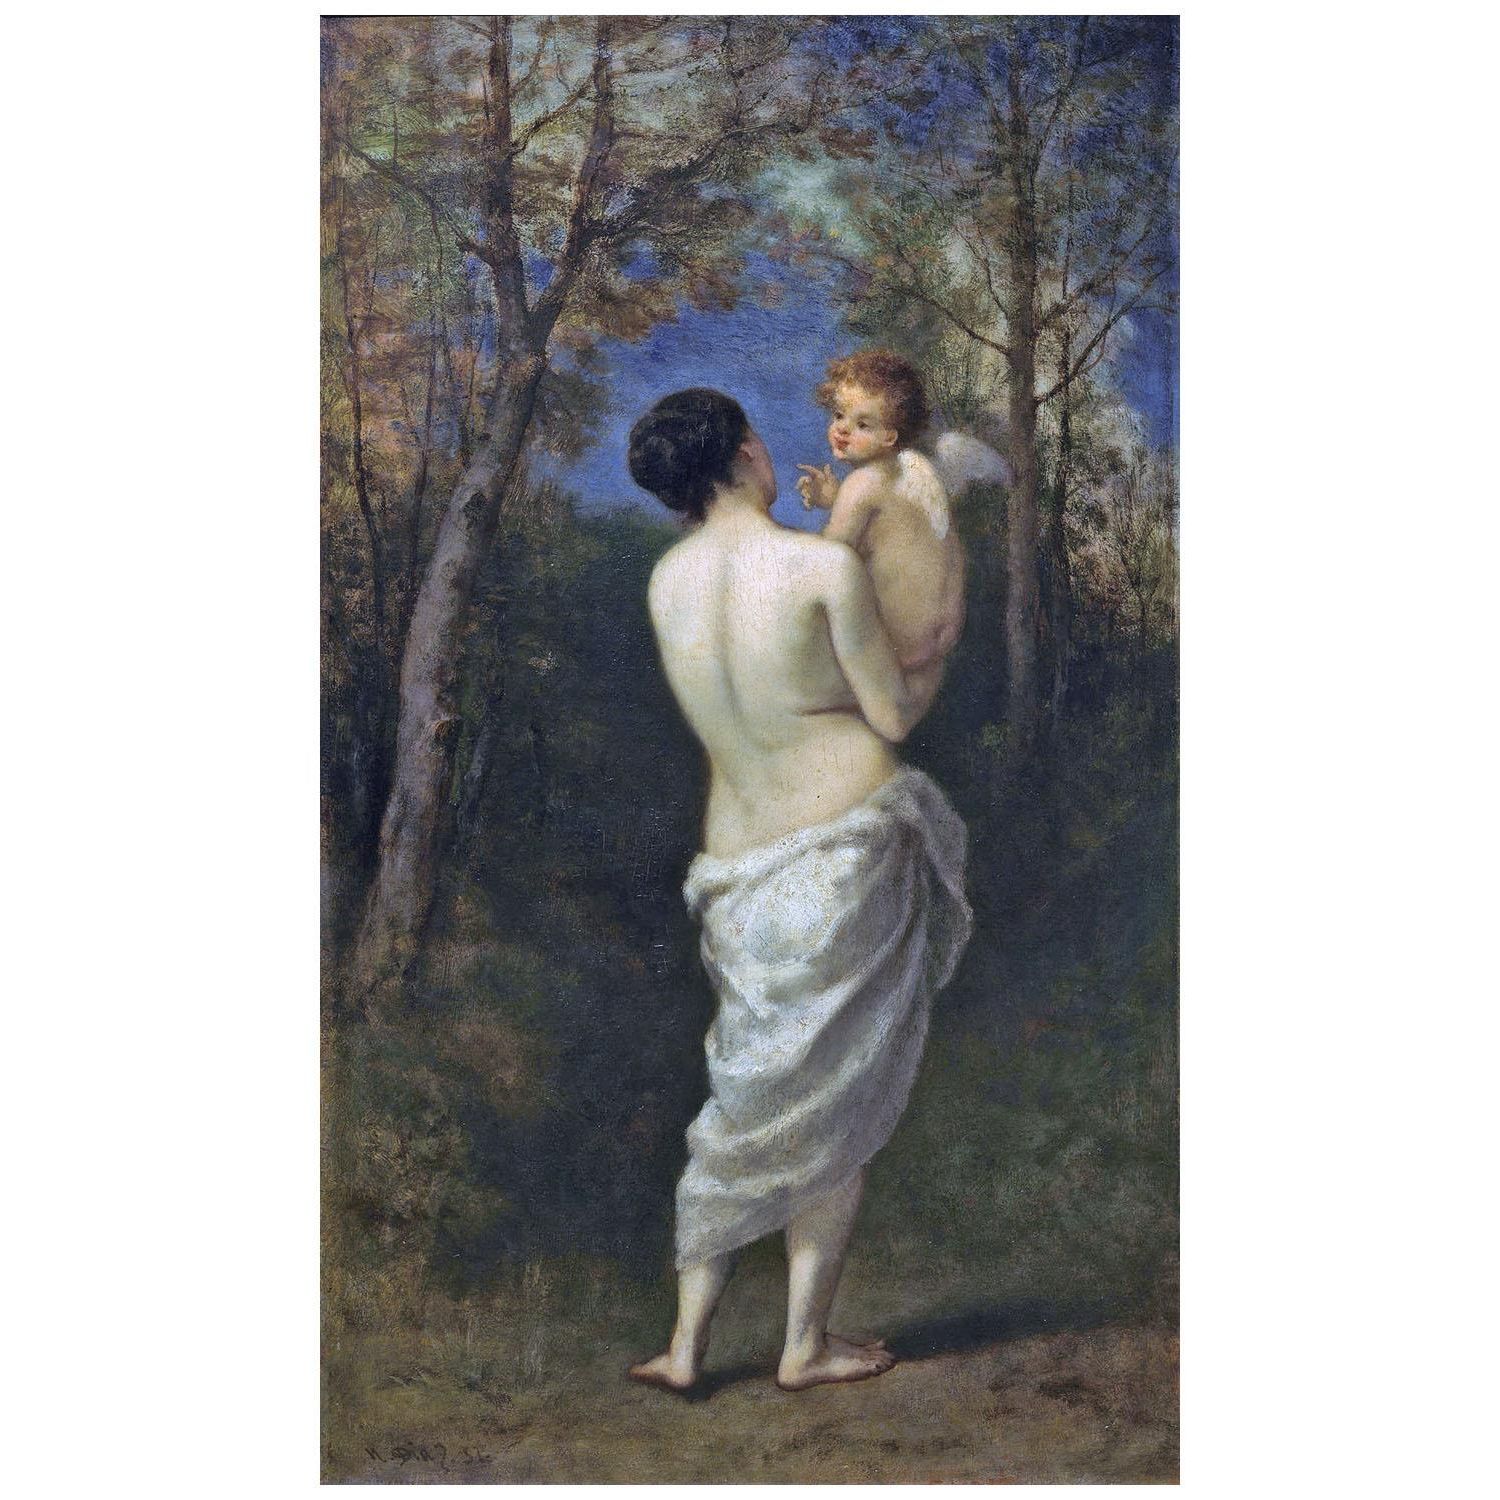 Narcisse Diaz. Vénus avec Cupidon sur ses mains. 1857. Pushkin Museum